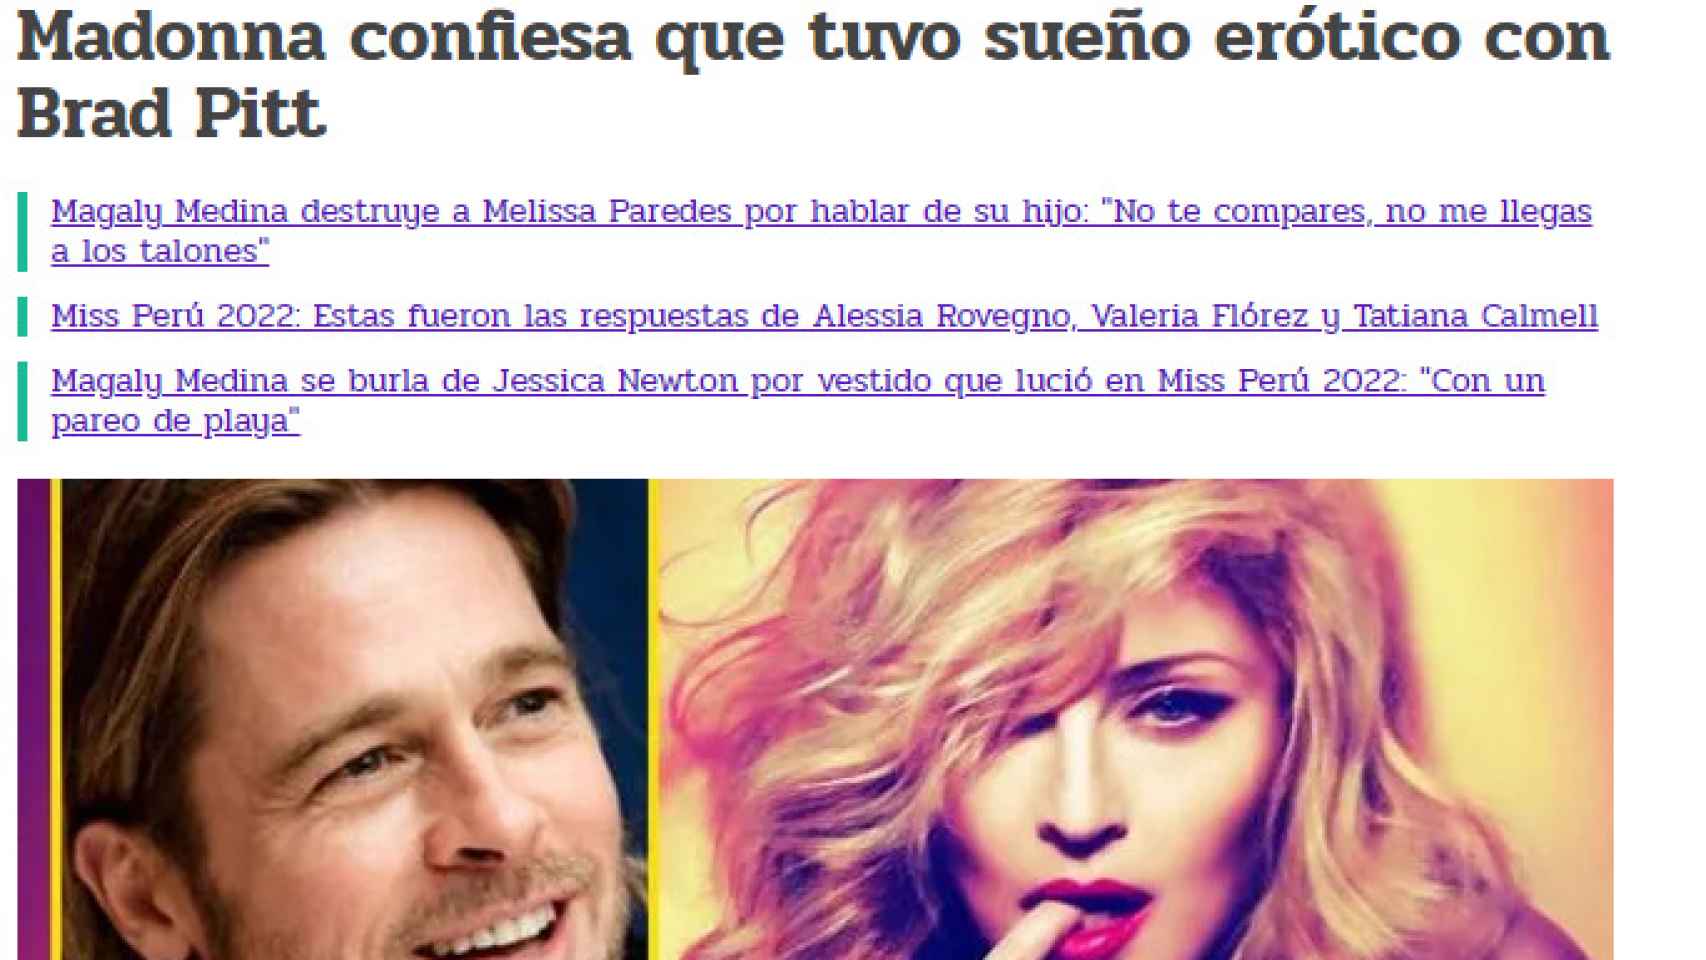 Madonna confiesa haber tenido sueños eróticos con Brad Pitt.